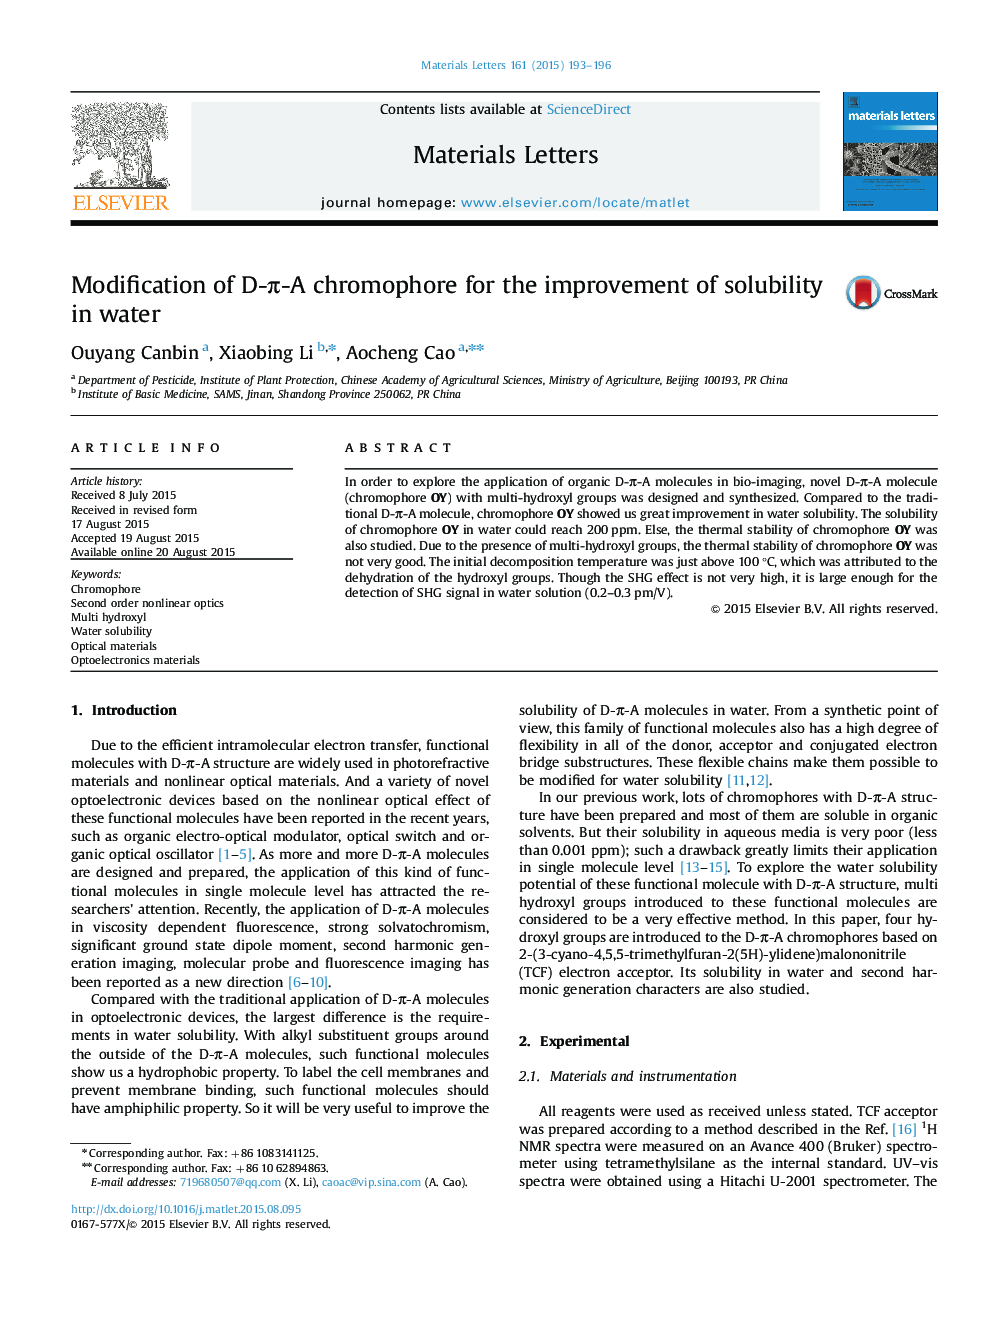 Modification of D-Ï-A chromophore for the improvement of solubility in water